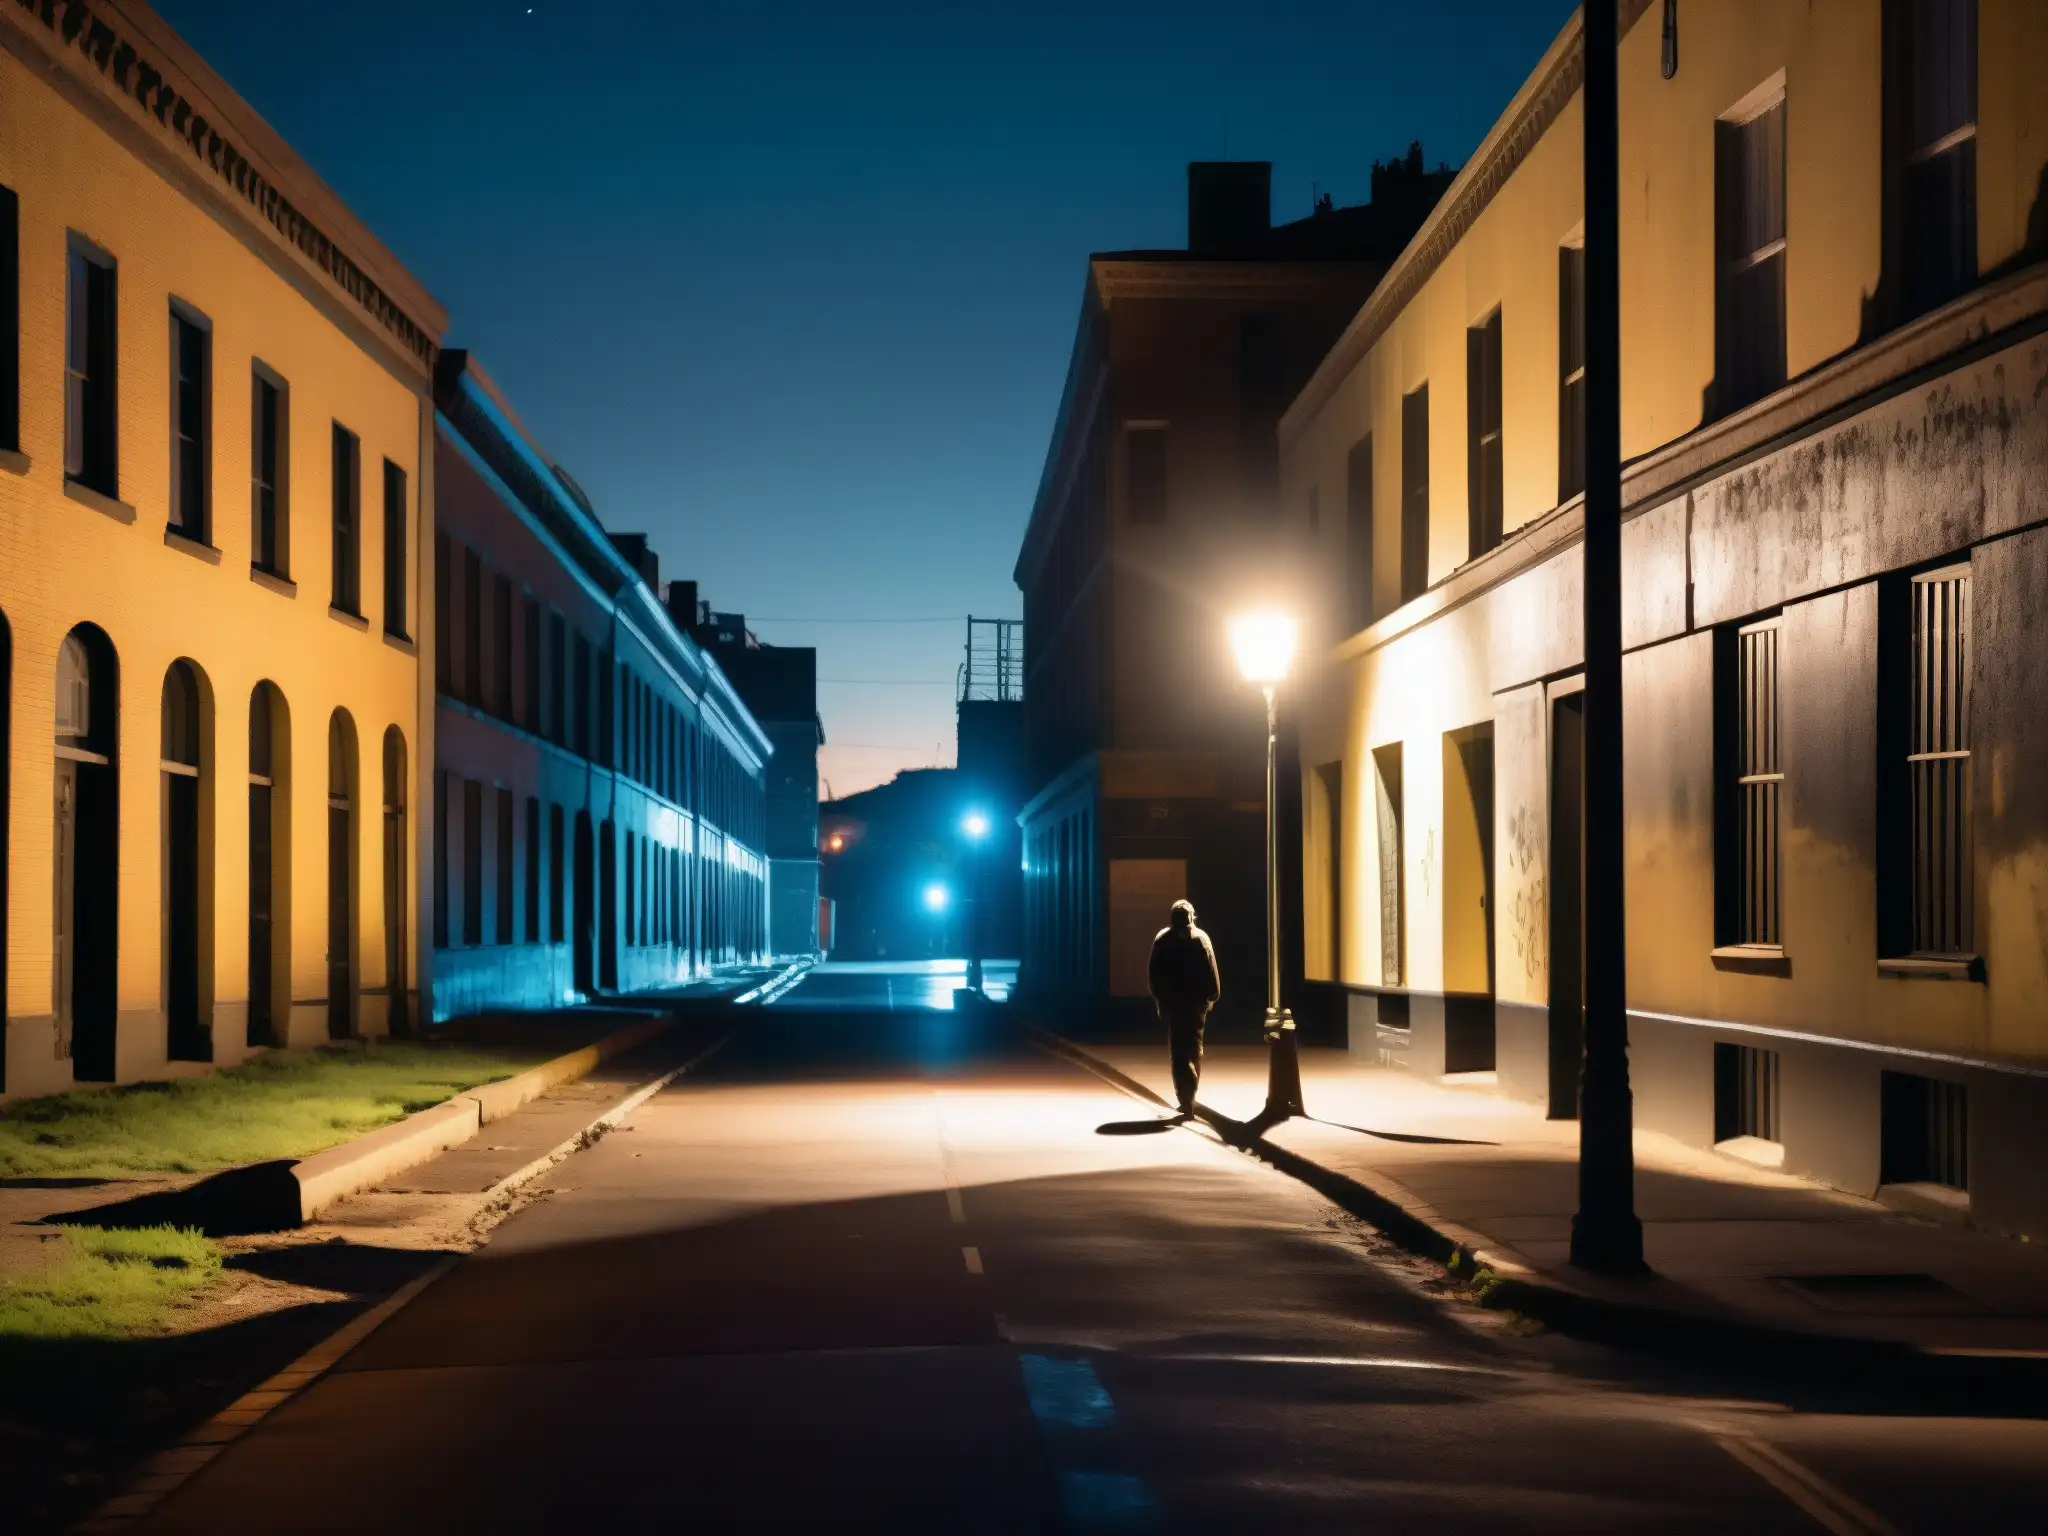 En la adaptación de leyendas urbanas en la era digital, una figura solitaria camina por una oscura calle de la ciudad, rodeada de misterio y soledad